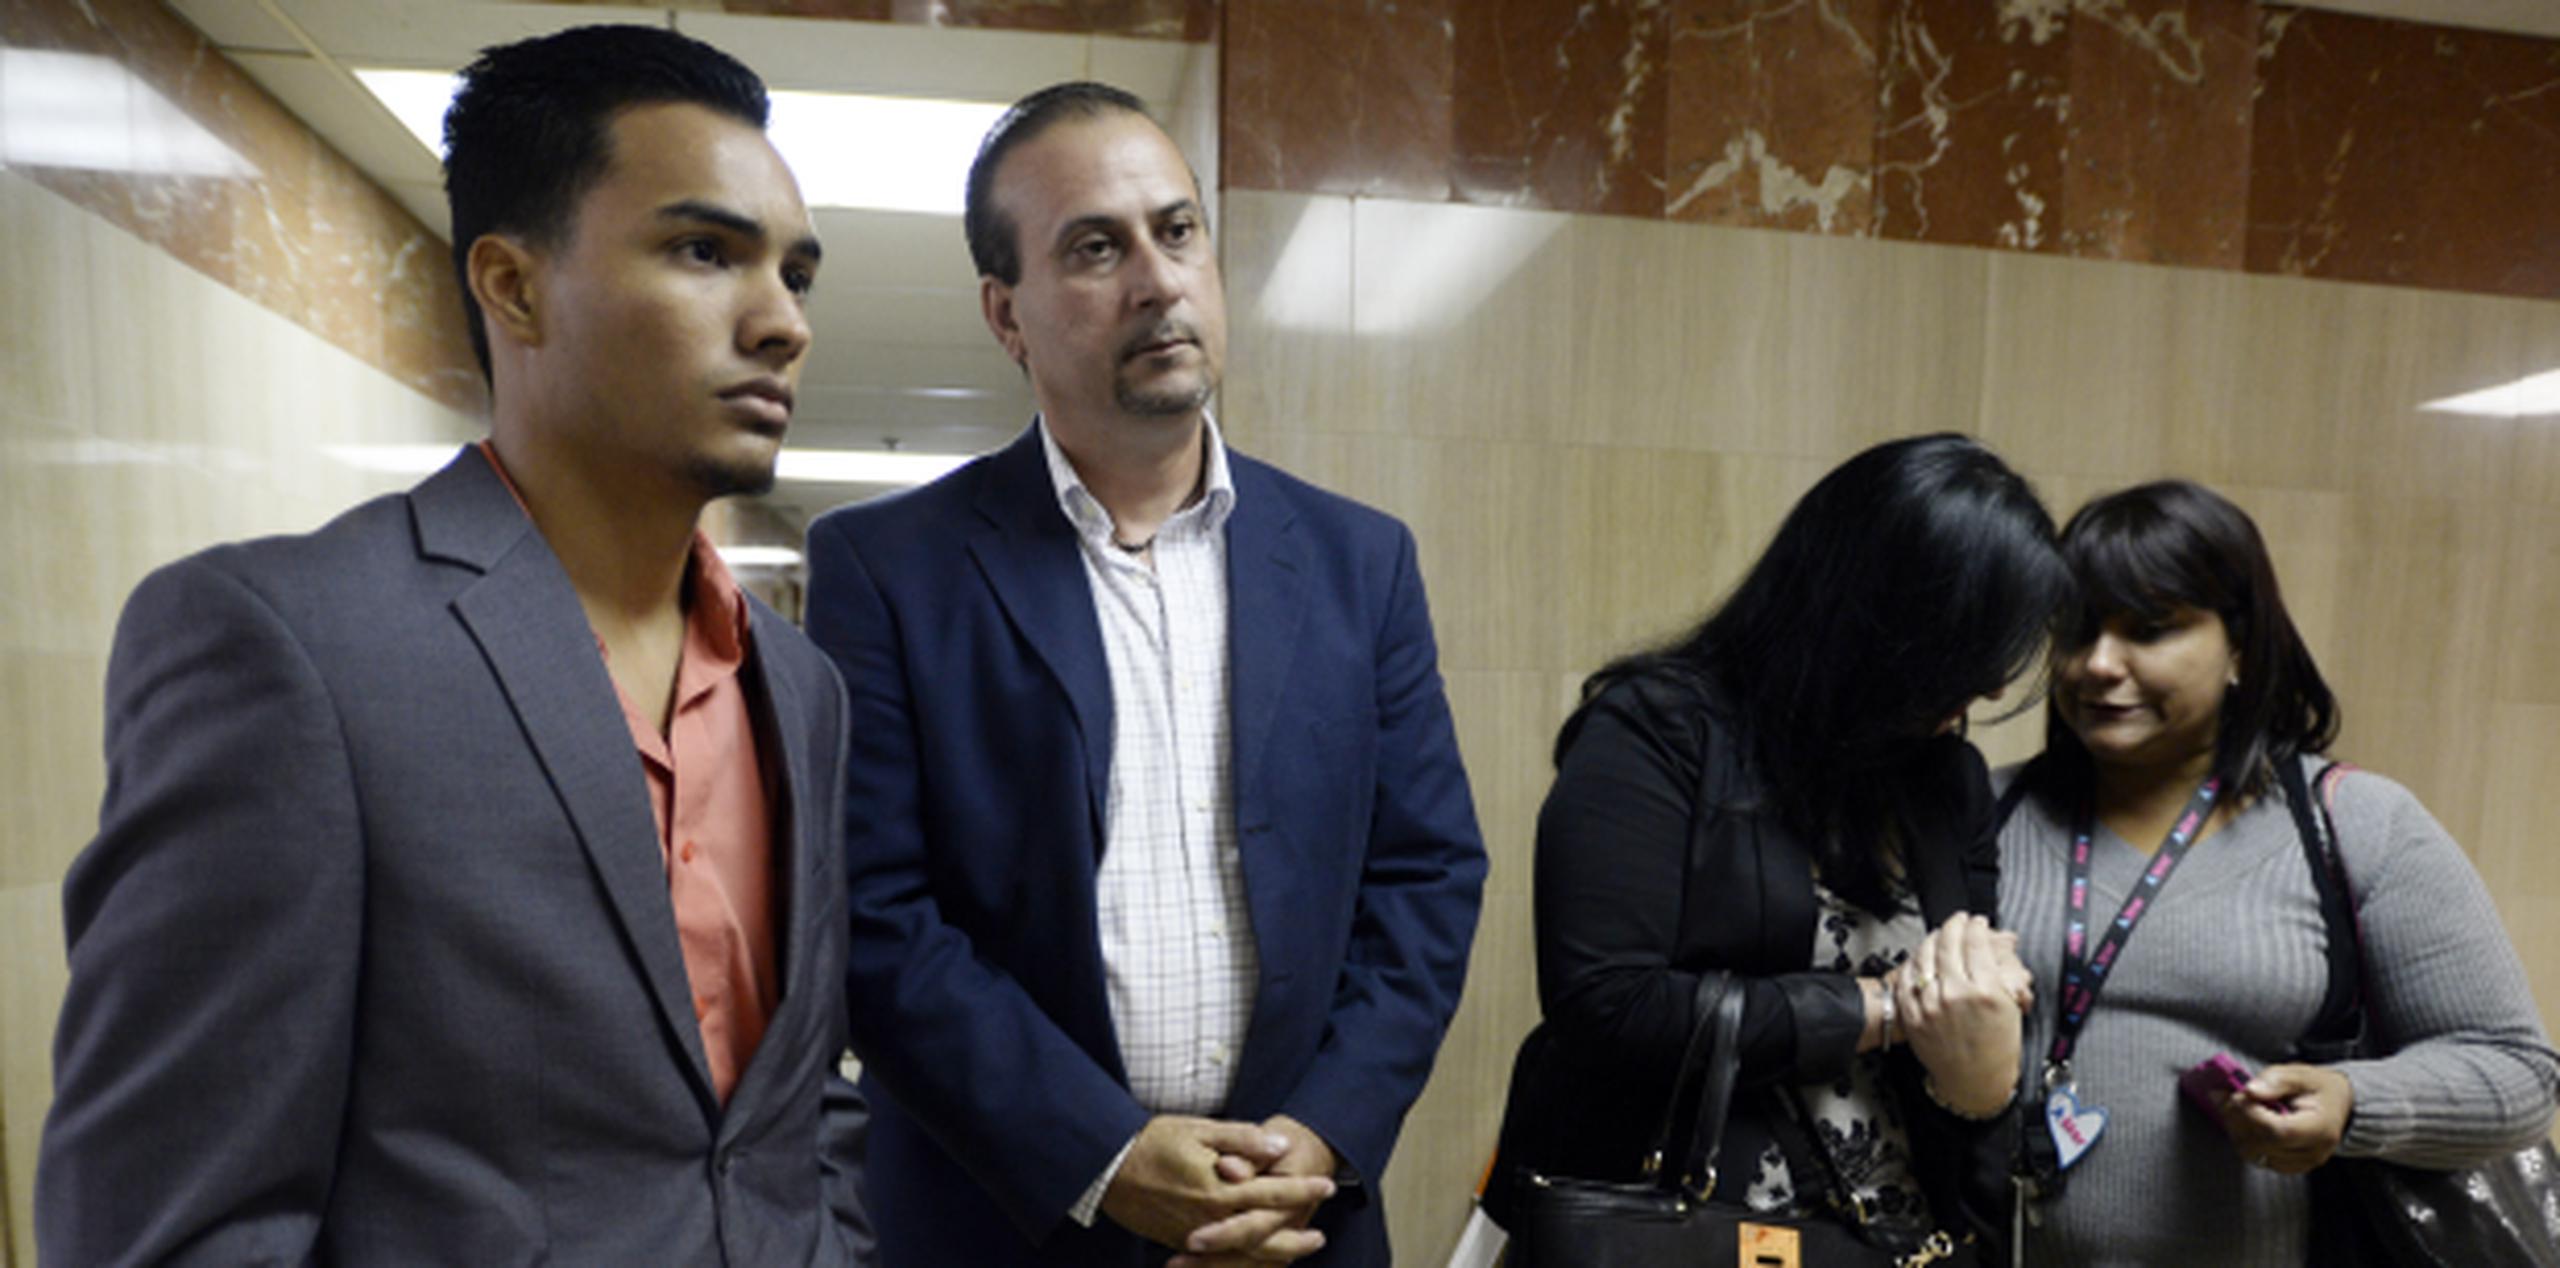 Ortiz Crespo abrazó a sus familiares al salir de la sala, quienes lloraron al escuchar el veredicto. (gerald.lopez@gfrmedia.com)